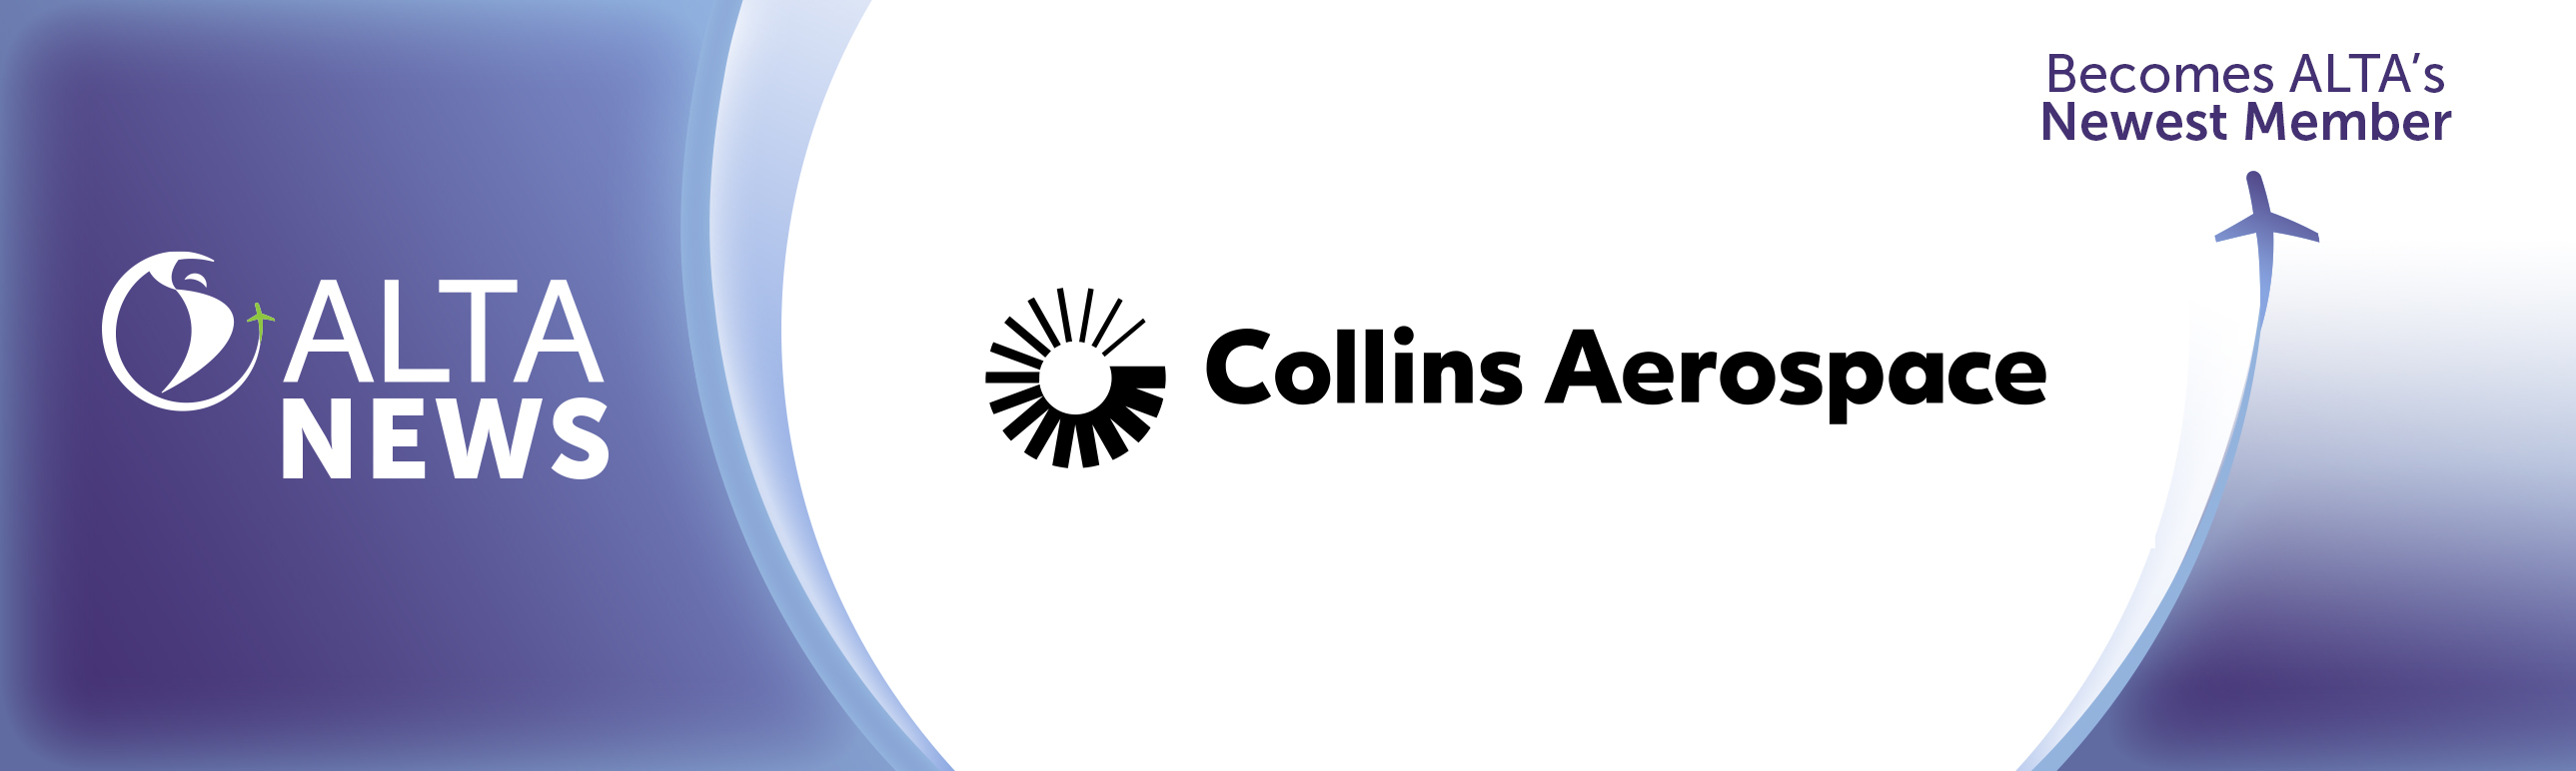 ALTA NEWS - ALTA dá as boas-vindas à Collins Aerospace